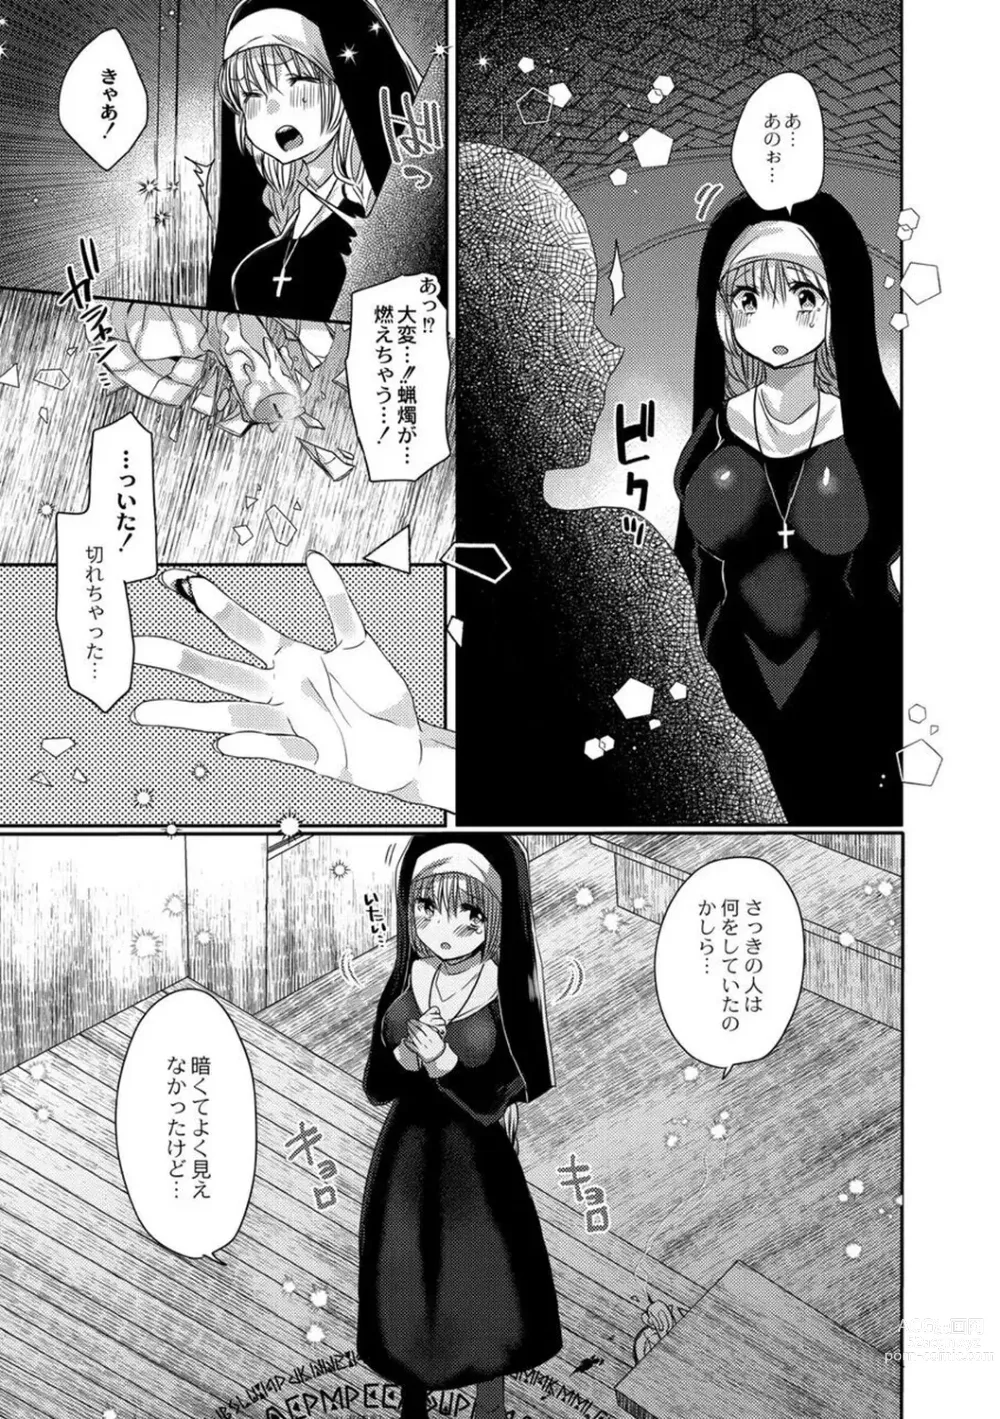 Page 9 of manga Junai Holic